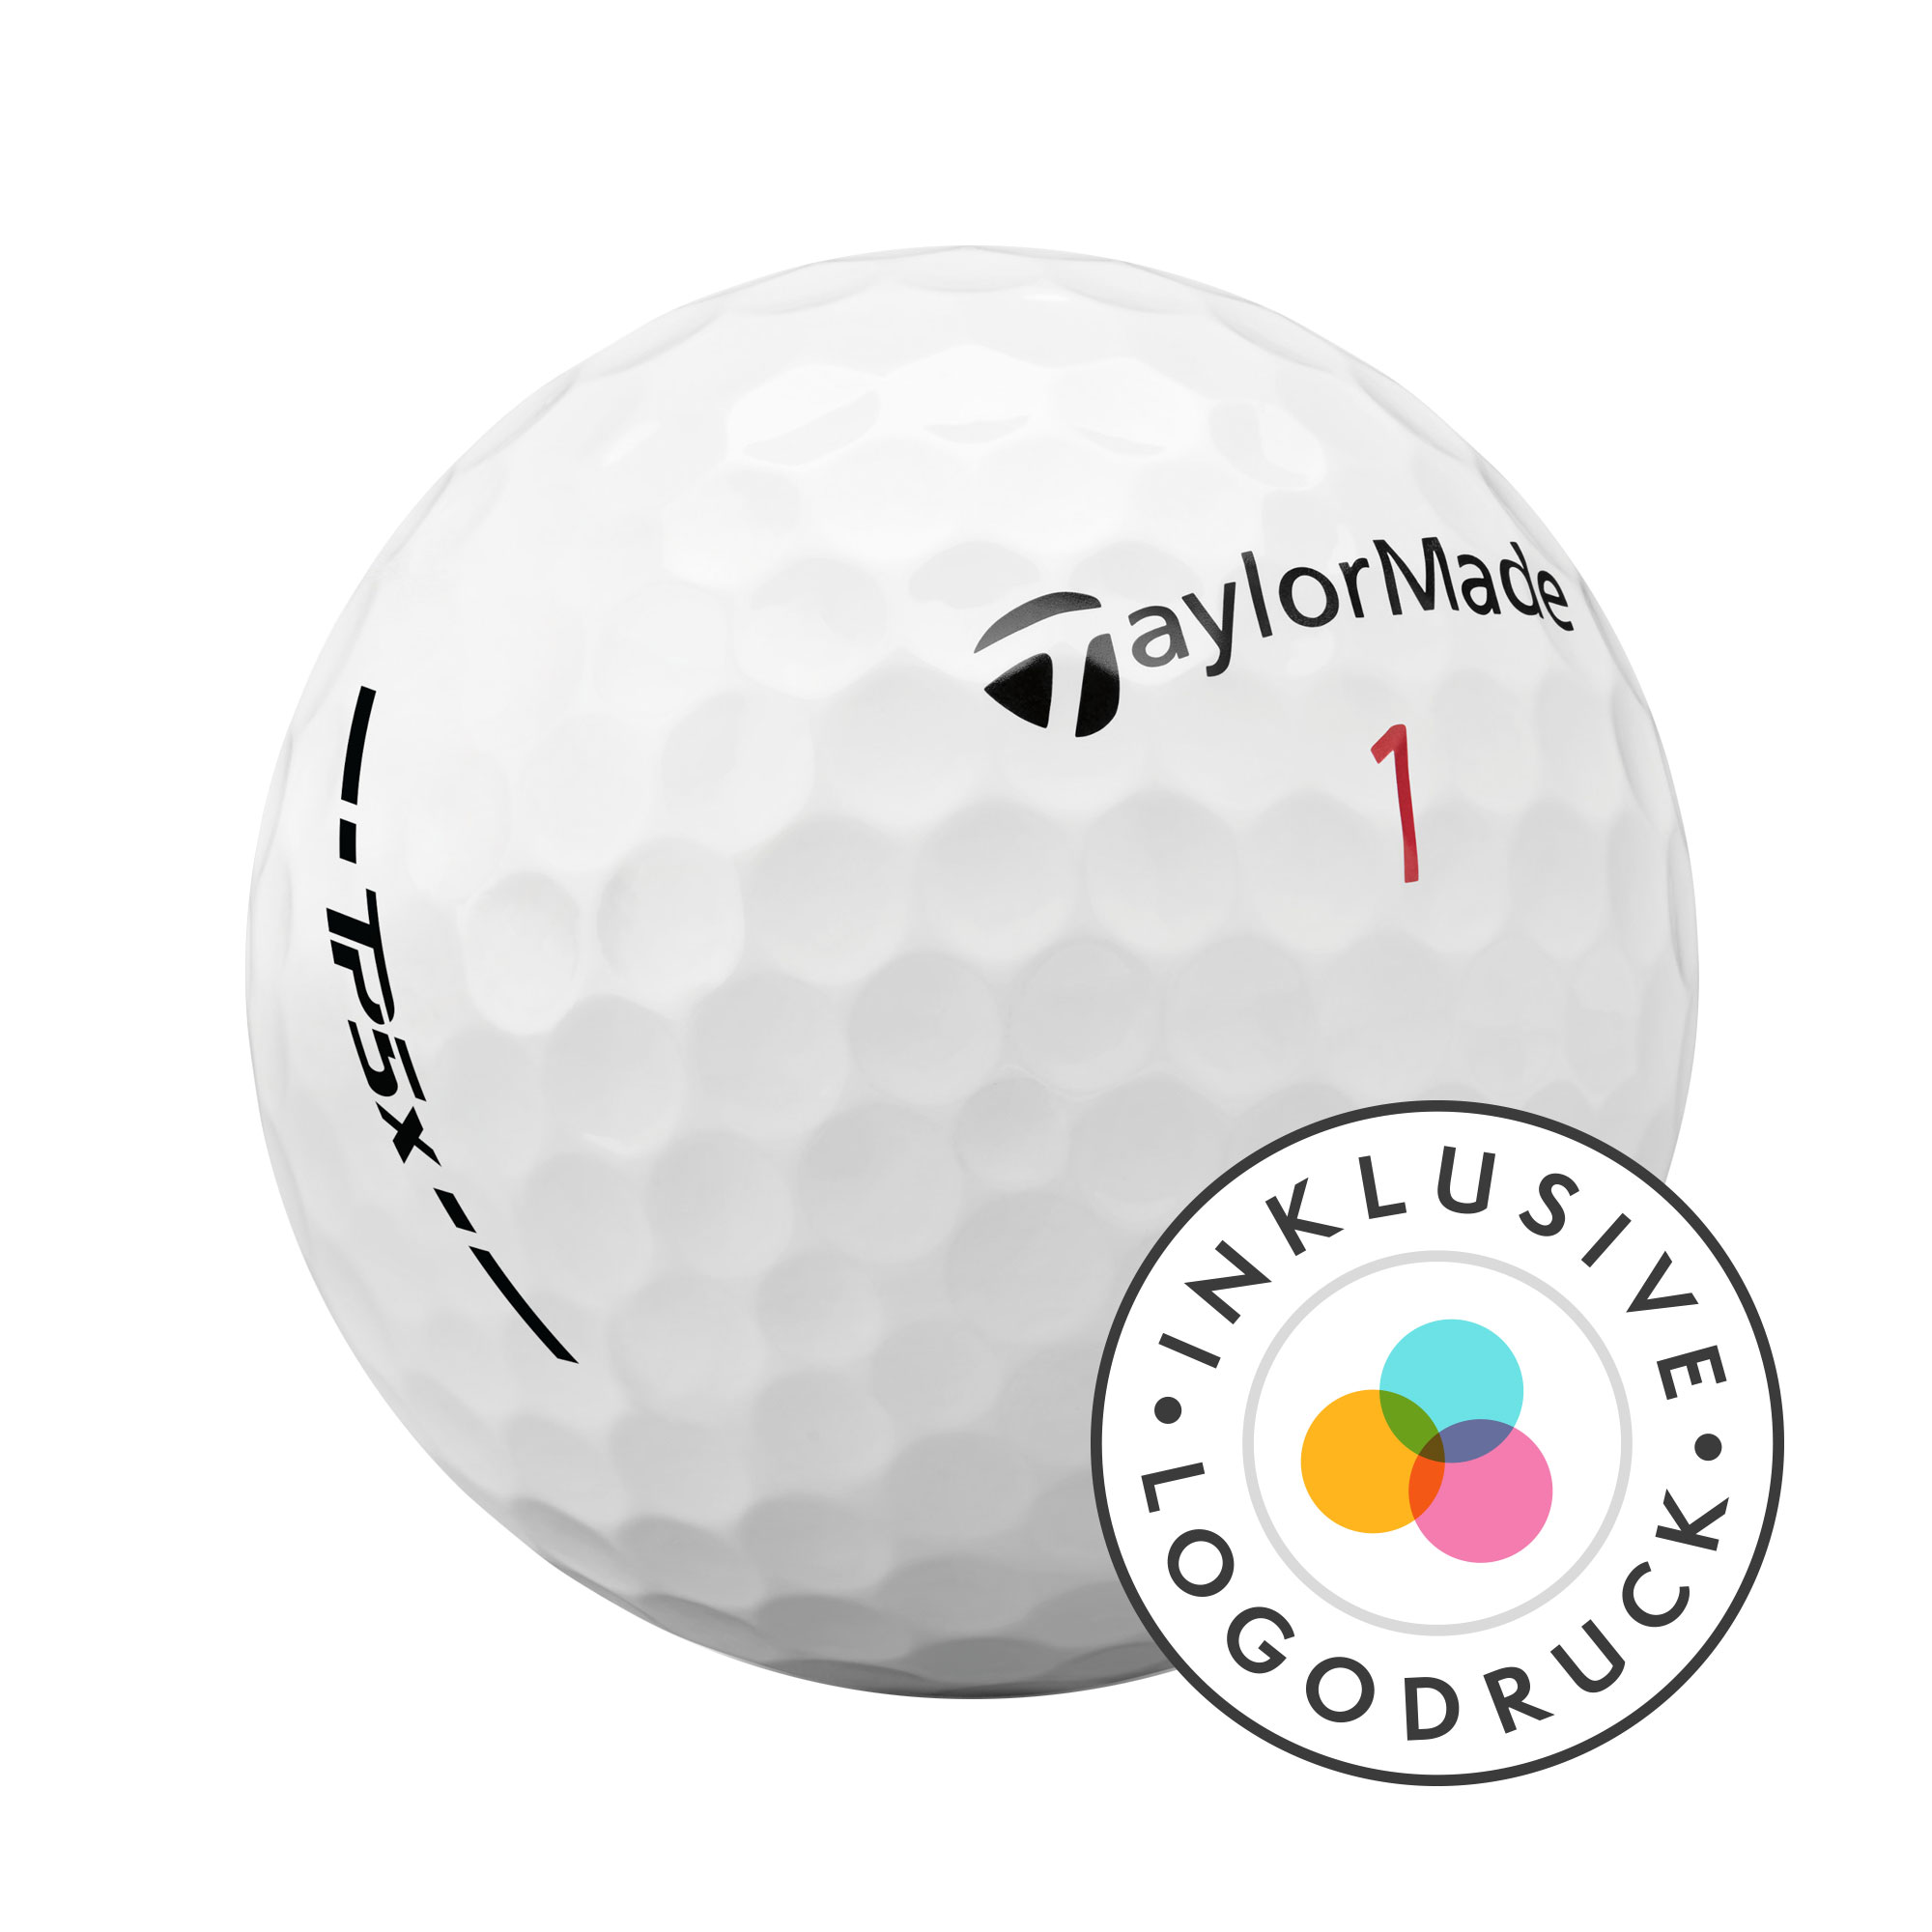 TaylorMade TP5x Golfbälle bedruckt, weiss (VPE à 12 Bälle)